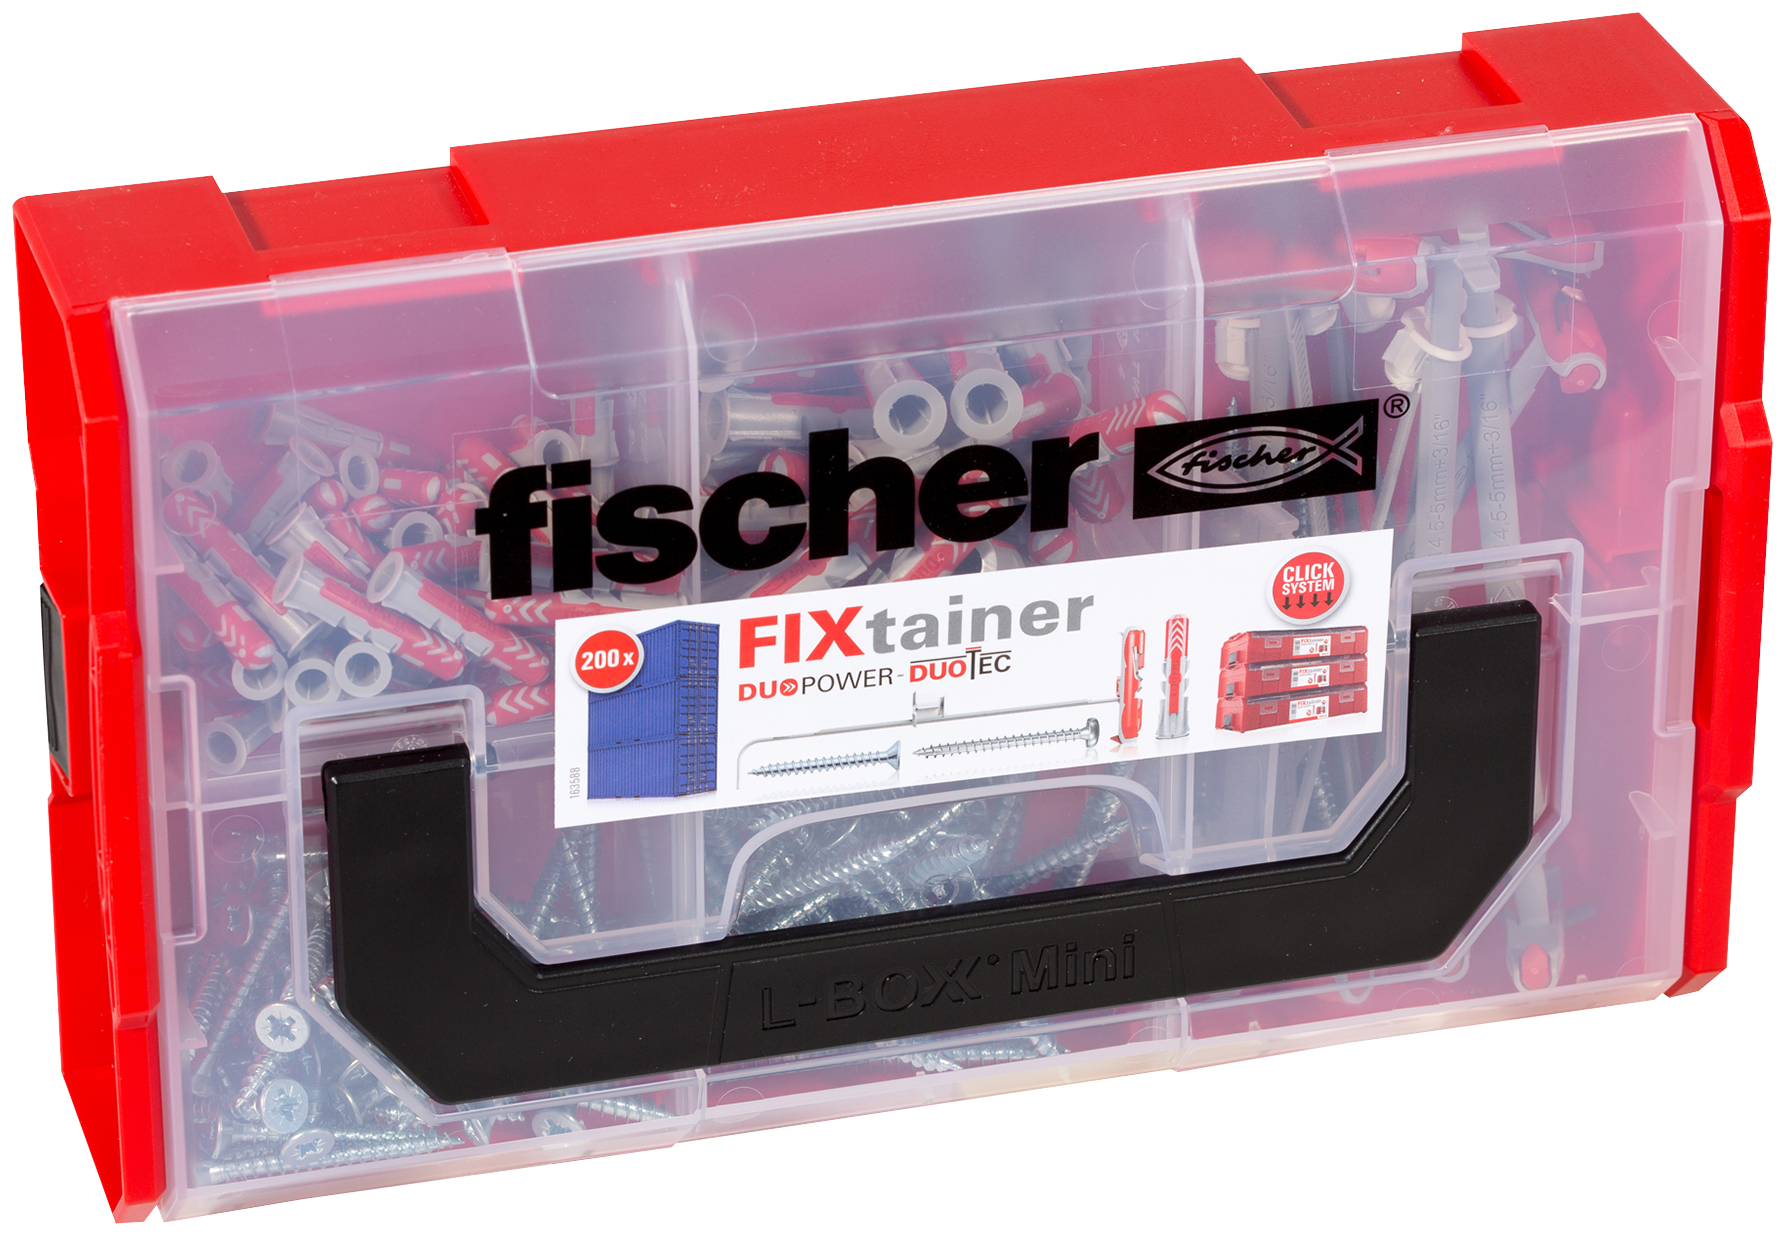 fischer Fixtainer DUOPOWER DUOTEC Valigetta tasselli (100 Pz.) Pratiche soluzioni di fissaggio per le pi comuni applicazioni nel fischer FixTainer impilabile e di alta qualit fie3201